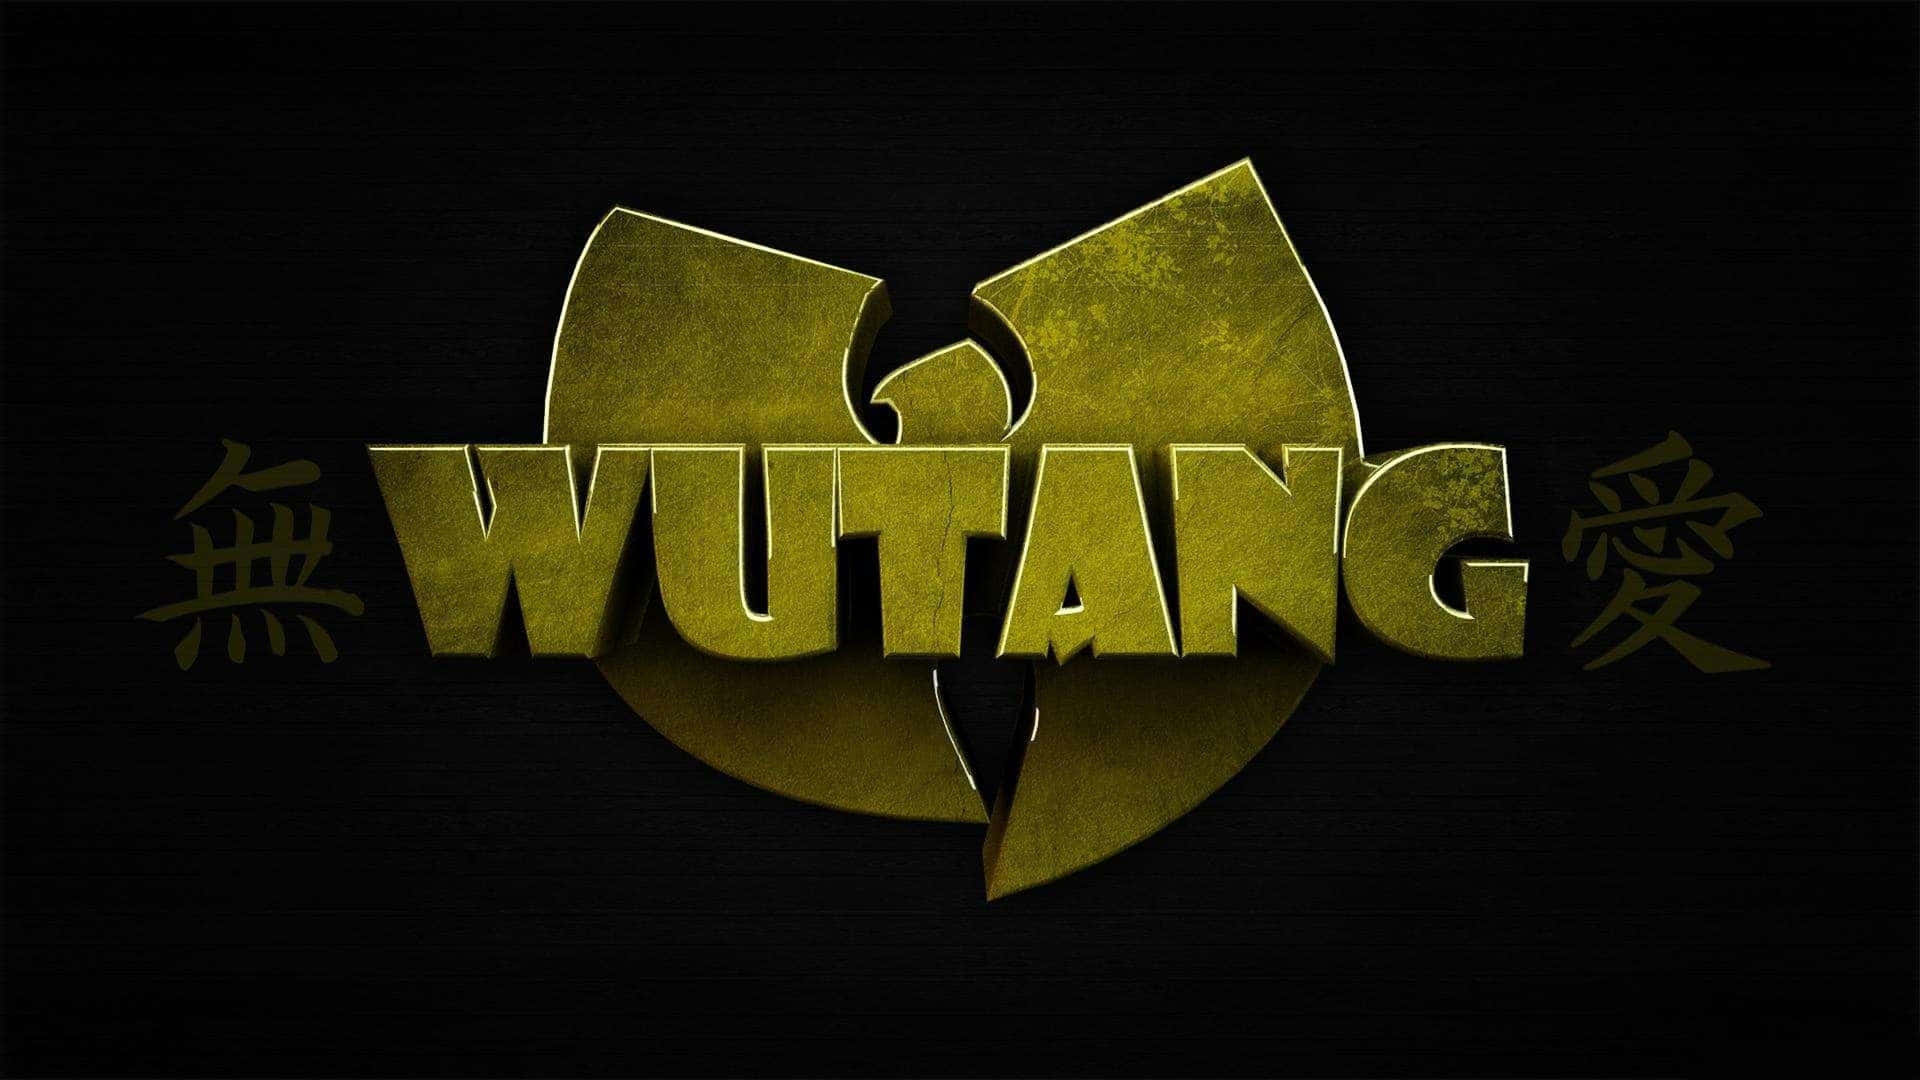 Download Classic Wu Tang Clan Log 4K Wallpaper | Wallpapers.com